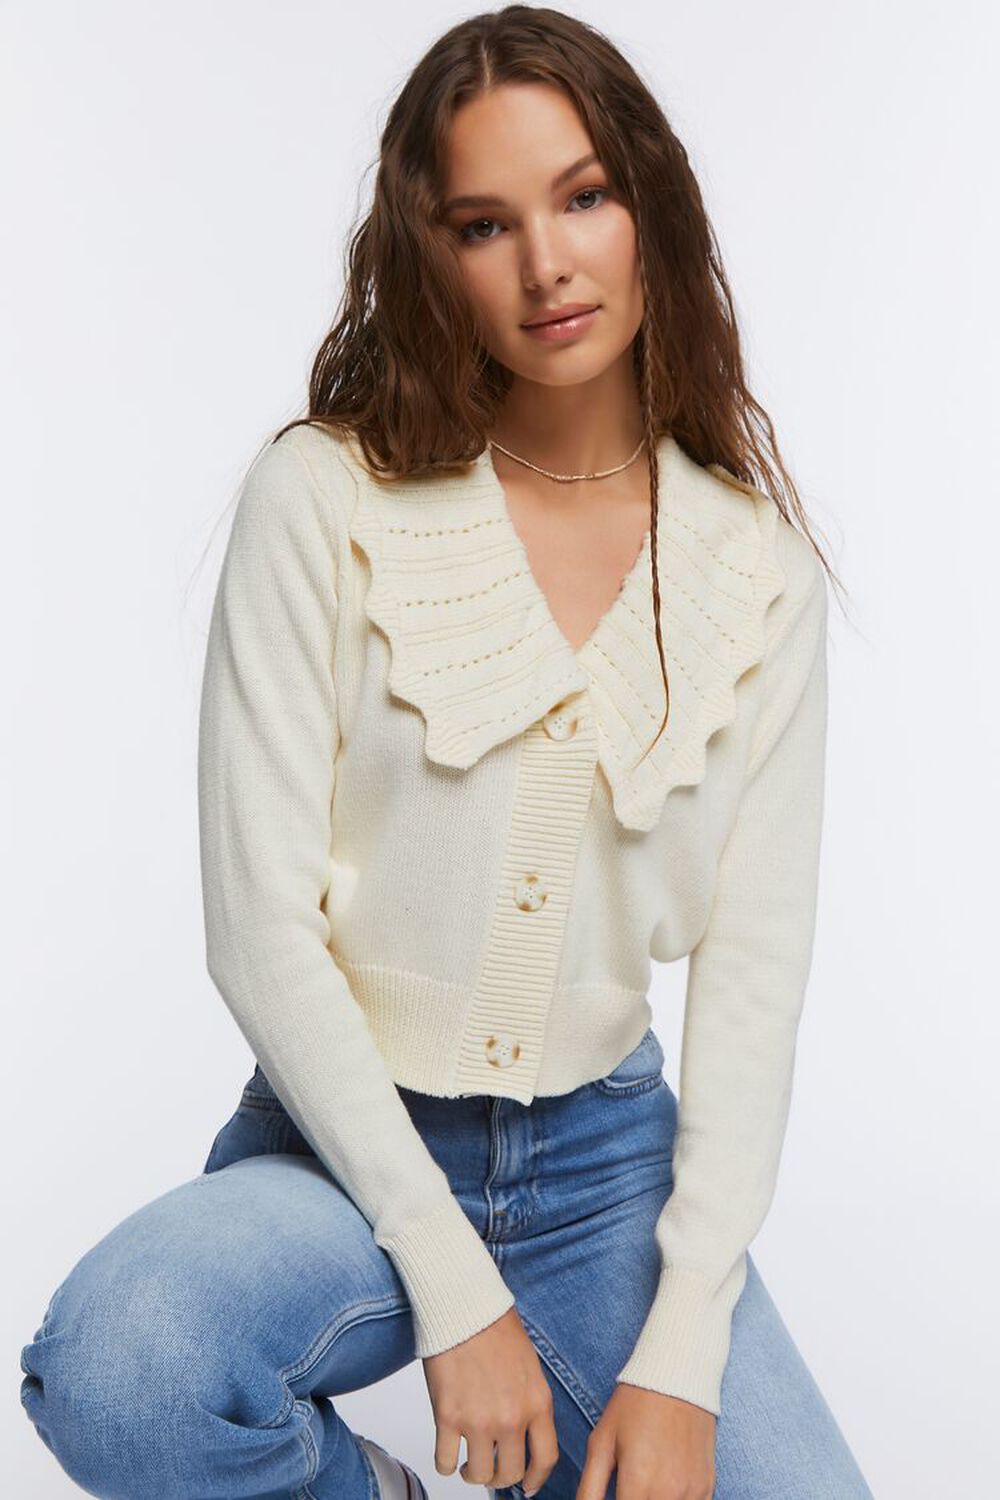 CREAM Chelsea Collar Cardigan Sweater, image 1